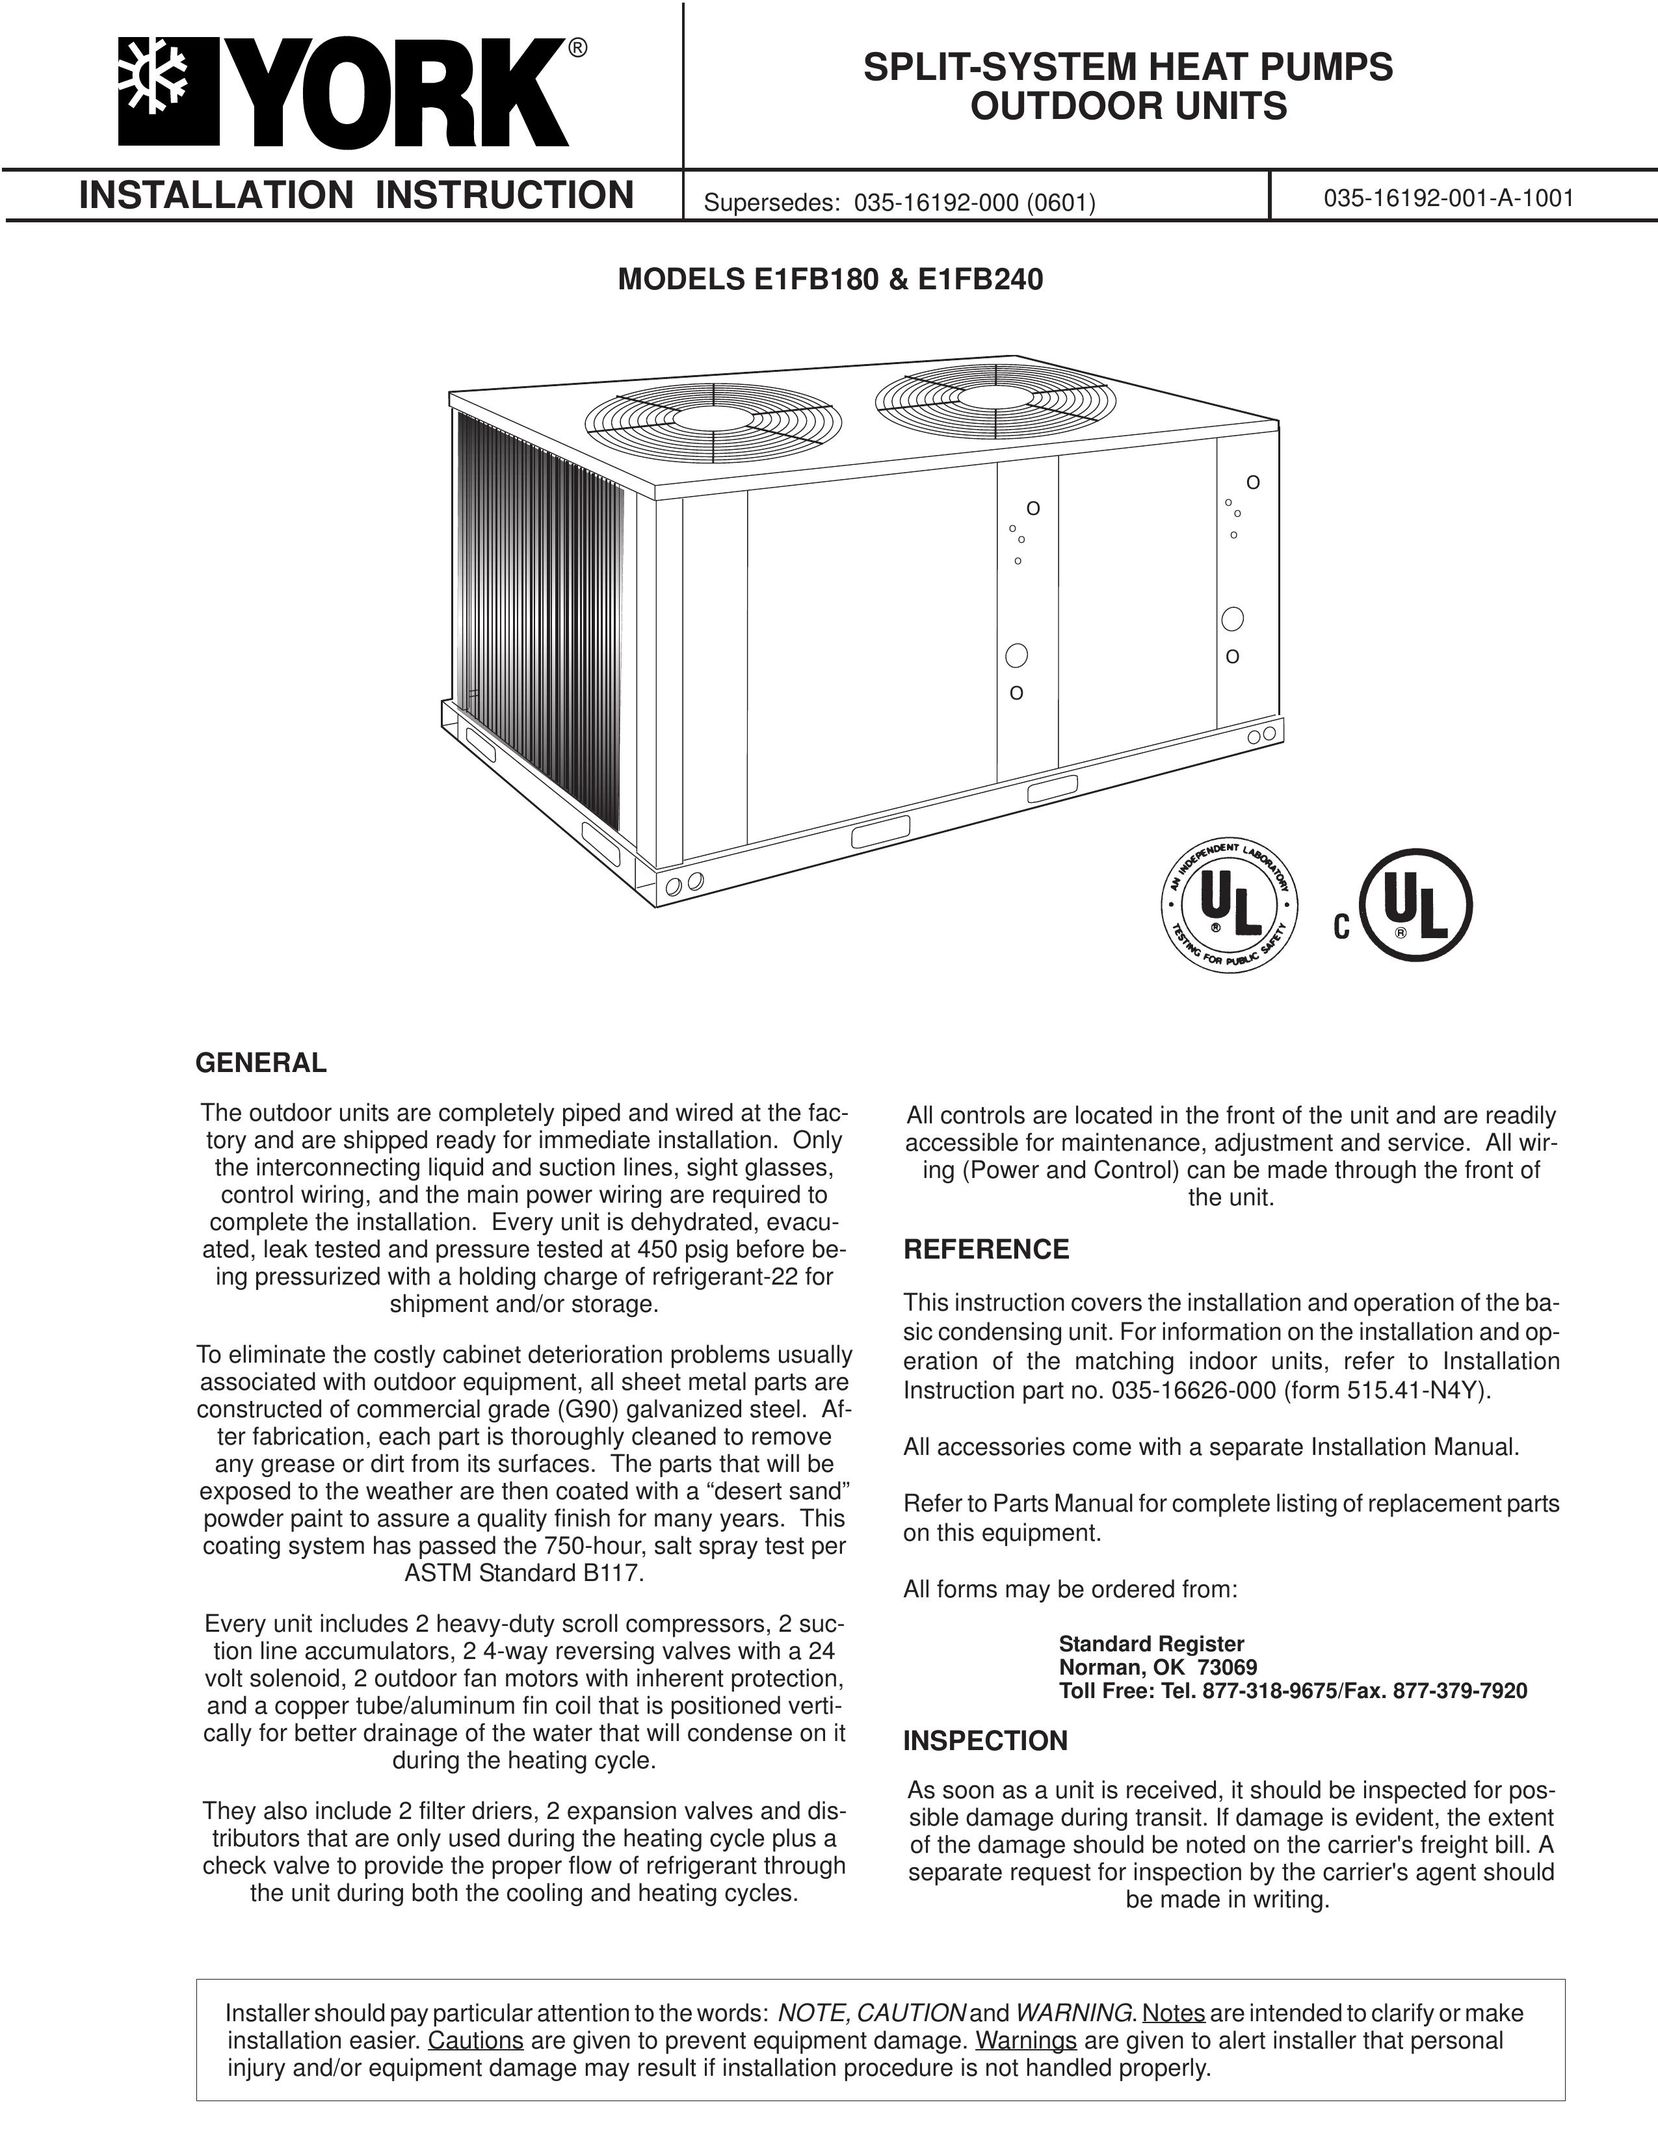 York E1FB180 Heat Pump User Manual